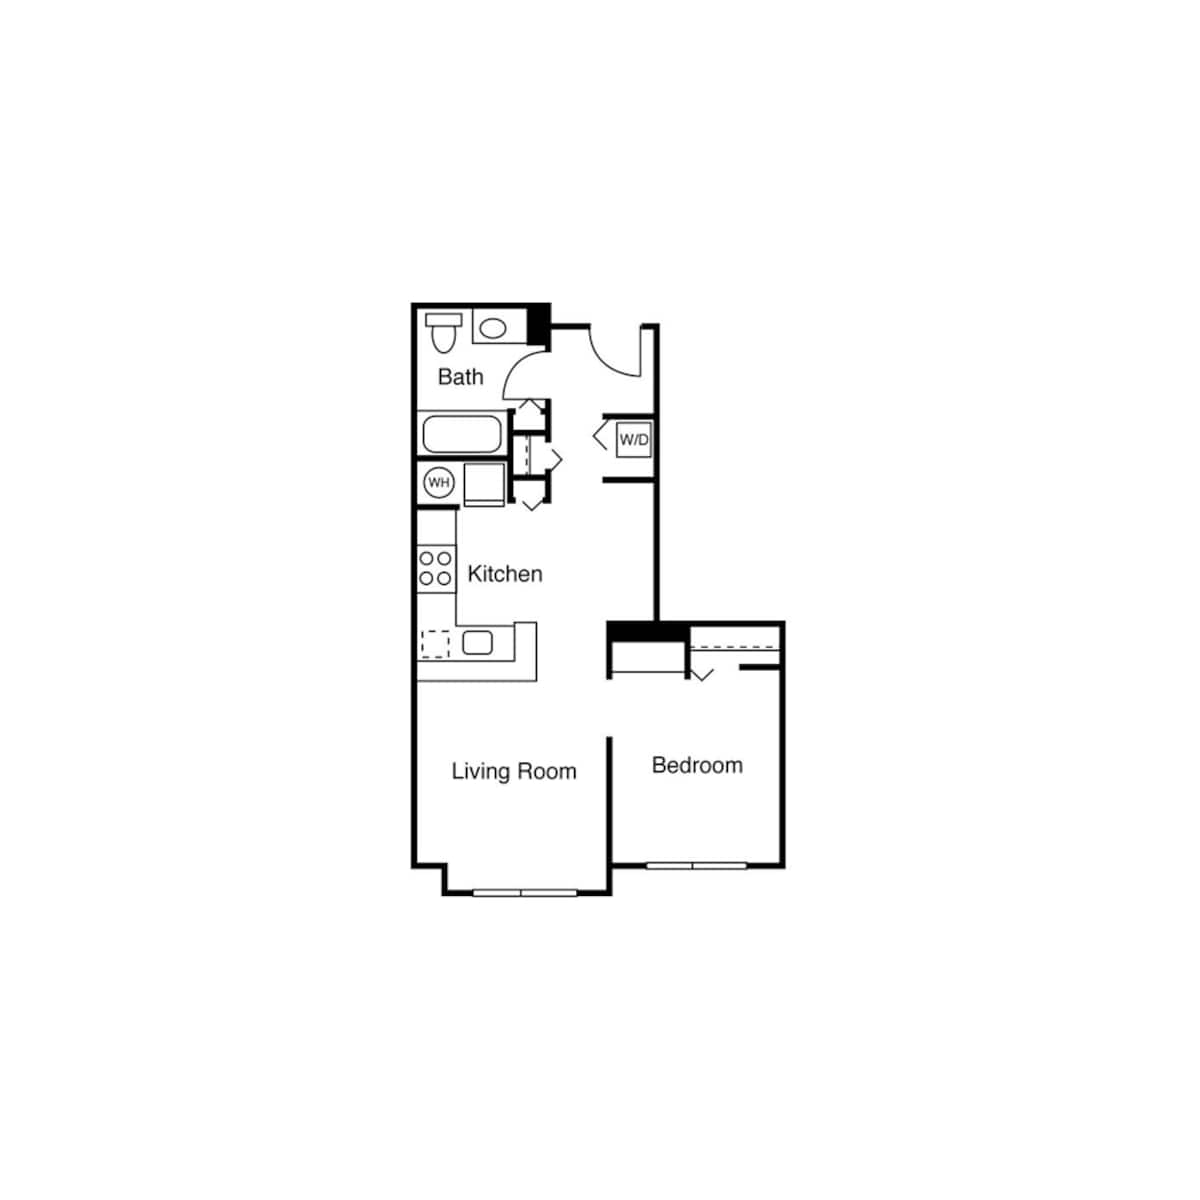 Floorplan diagram for Studio H, showing 1 bedroom